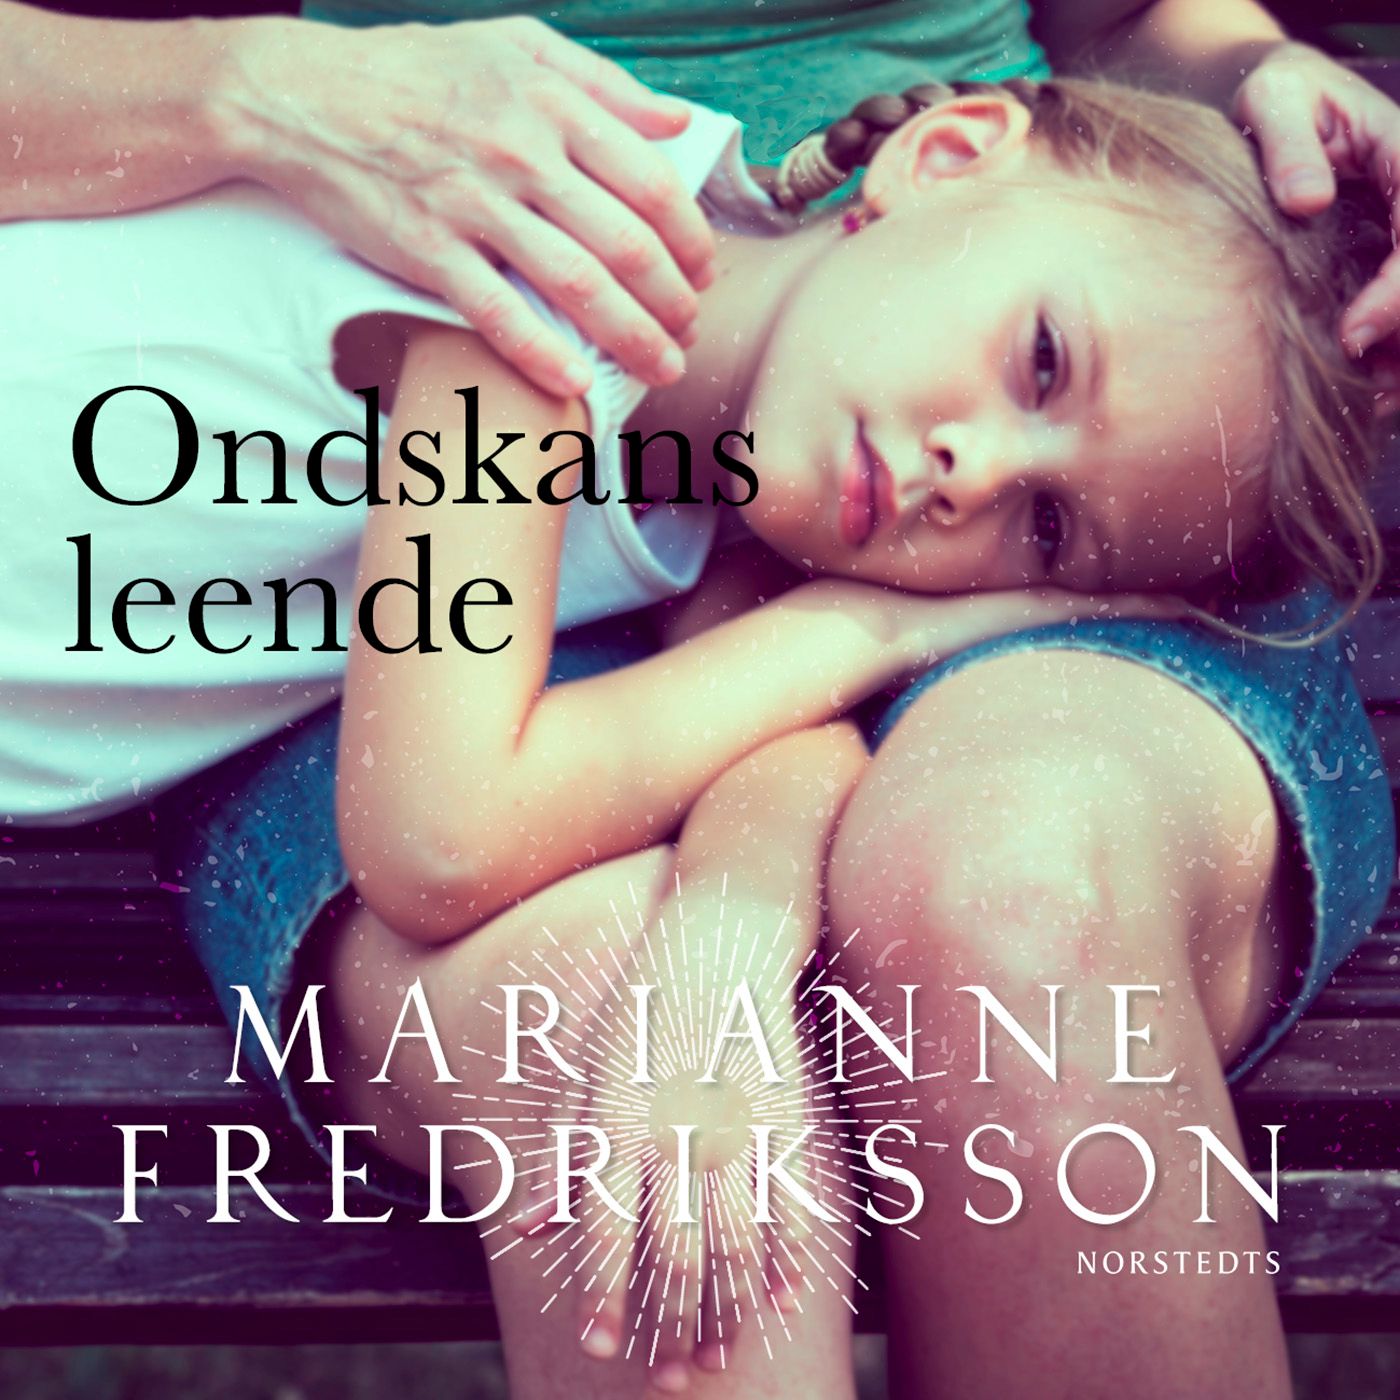 Ondskans leende, ljudbok av Marianne Fredriksson